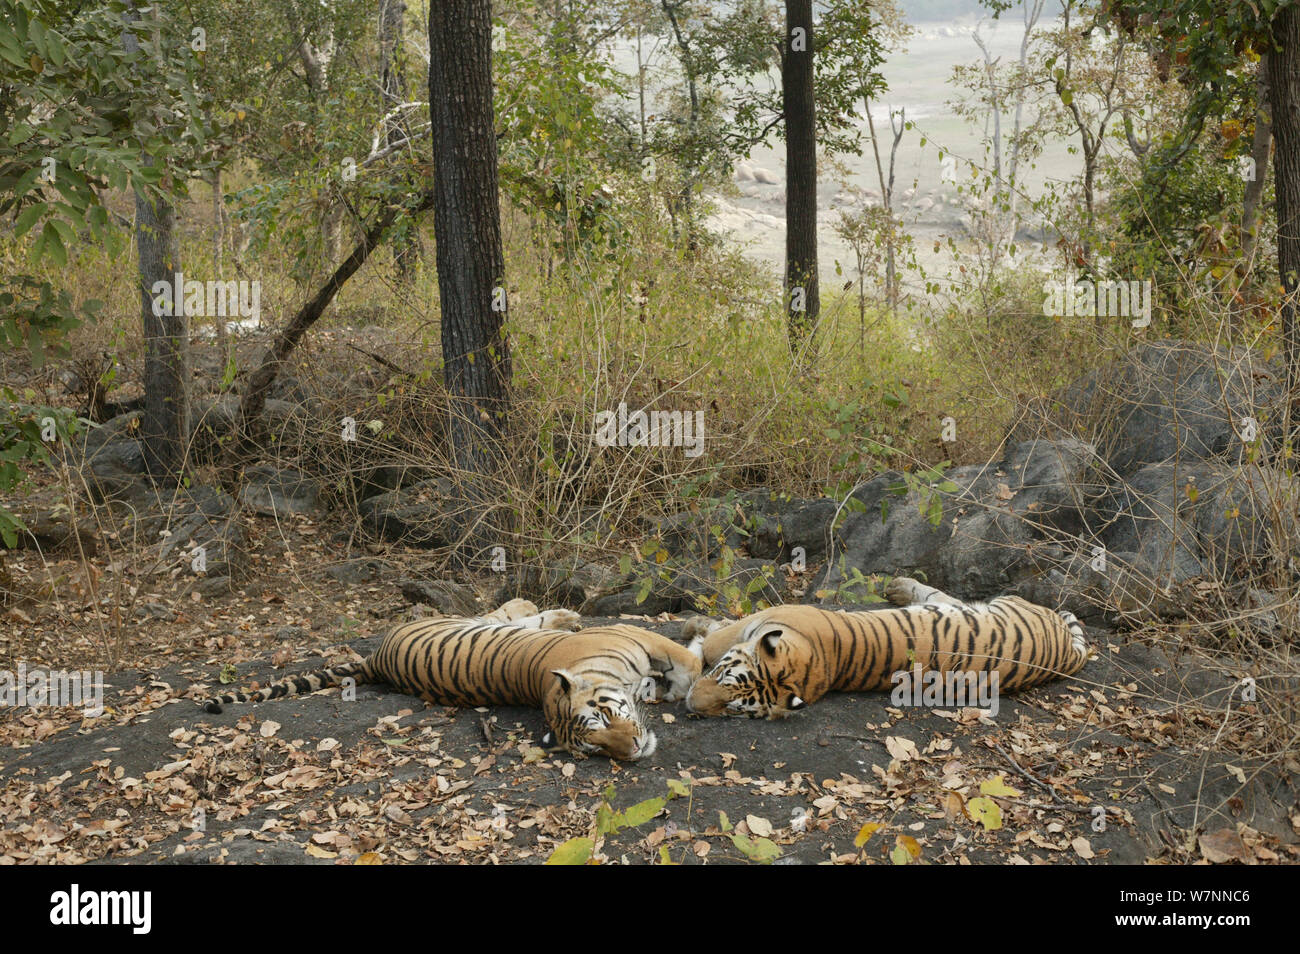 Le tigri del Bengala (Panthera tigris tigris) di appoggio, Pench National Park, Madhya Pradesh, India, presa sulla posizione per 'Tiger - Spy nella giungla' Febbraio 2007 Foto Stock